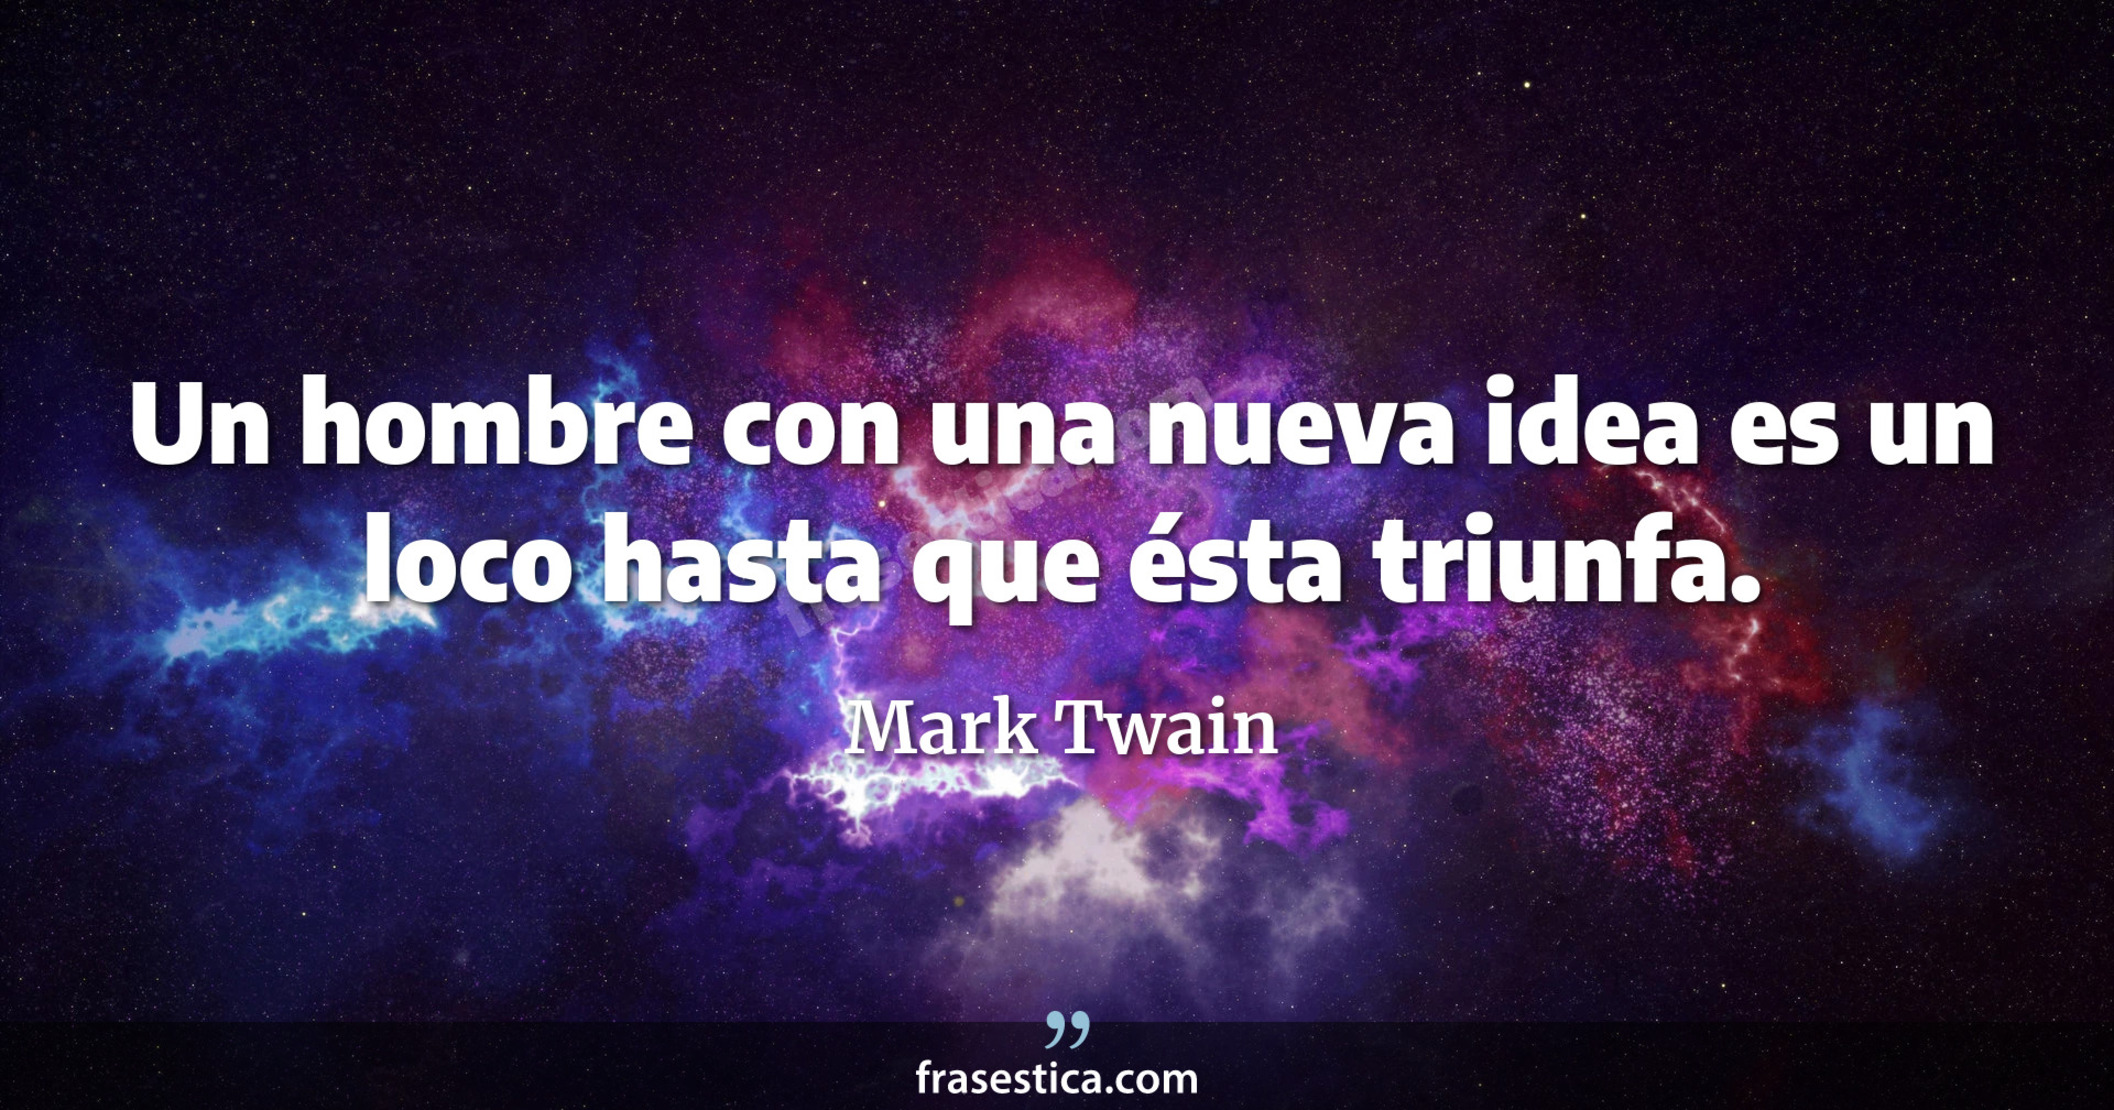 Un hombre con una nueva idea es un loco hasta que ésta triunfa. - Mark Twain